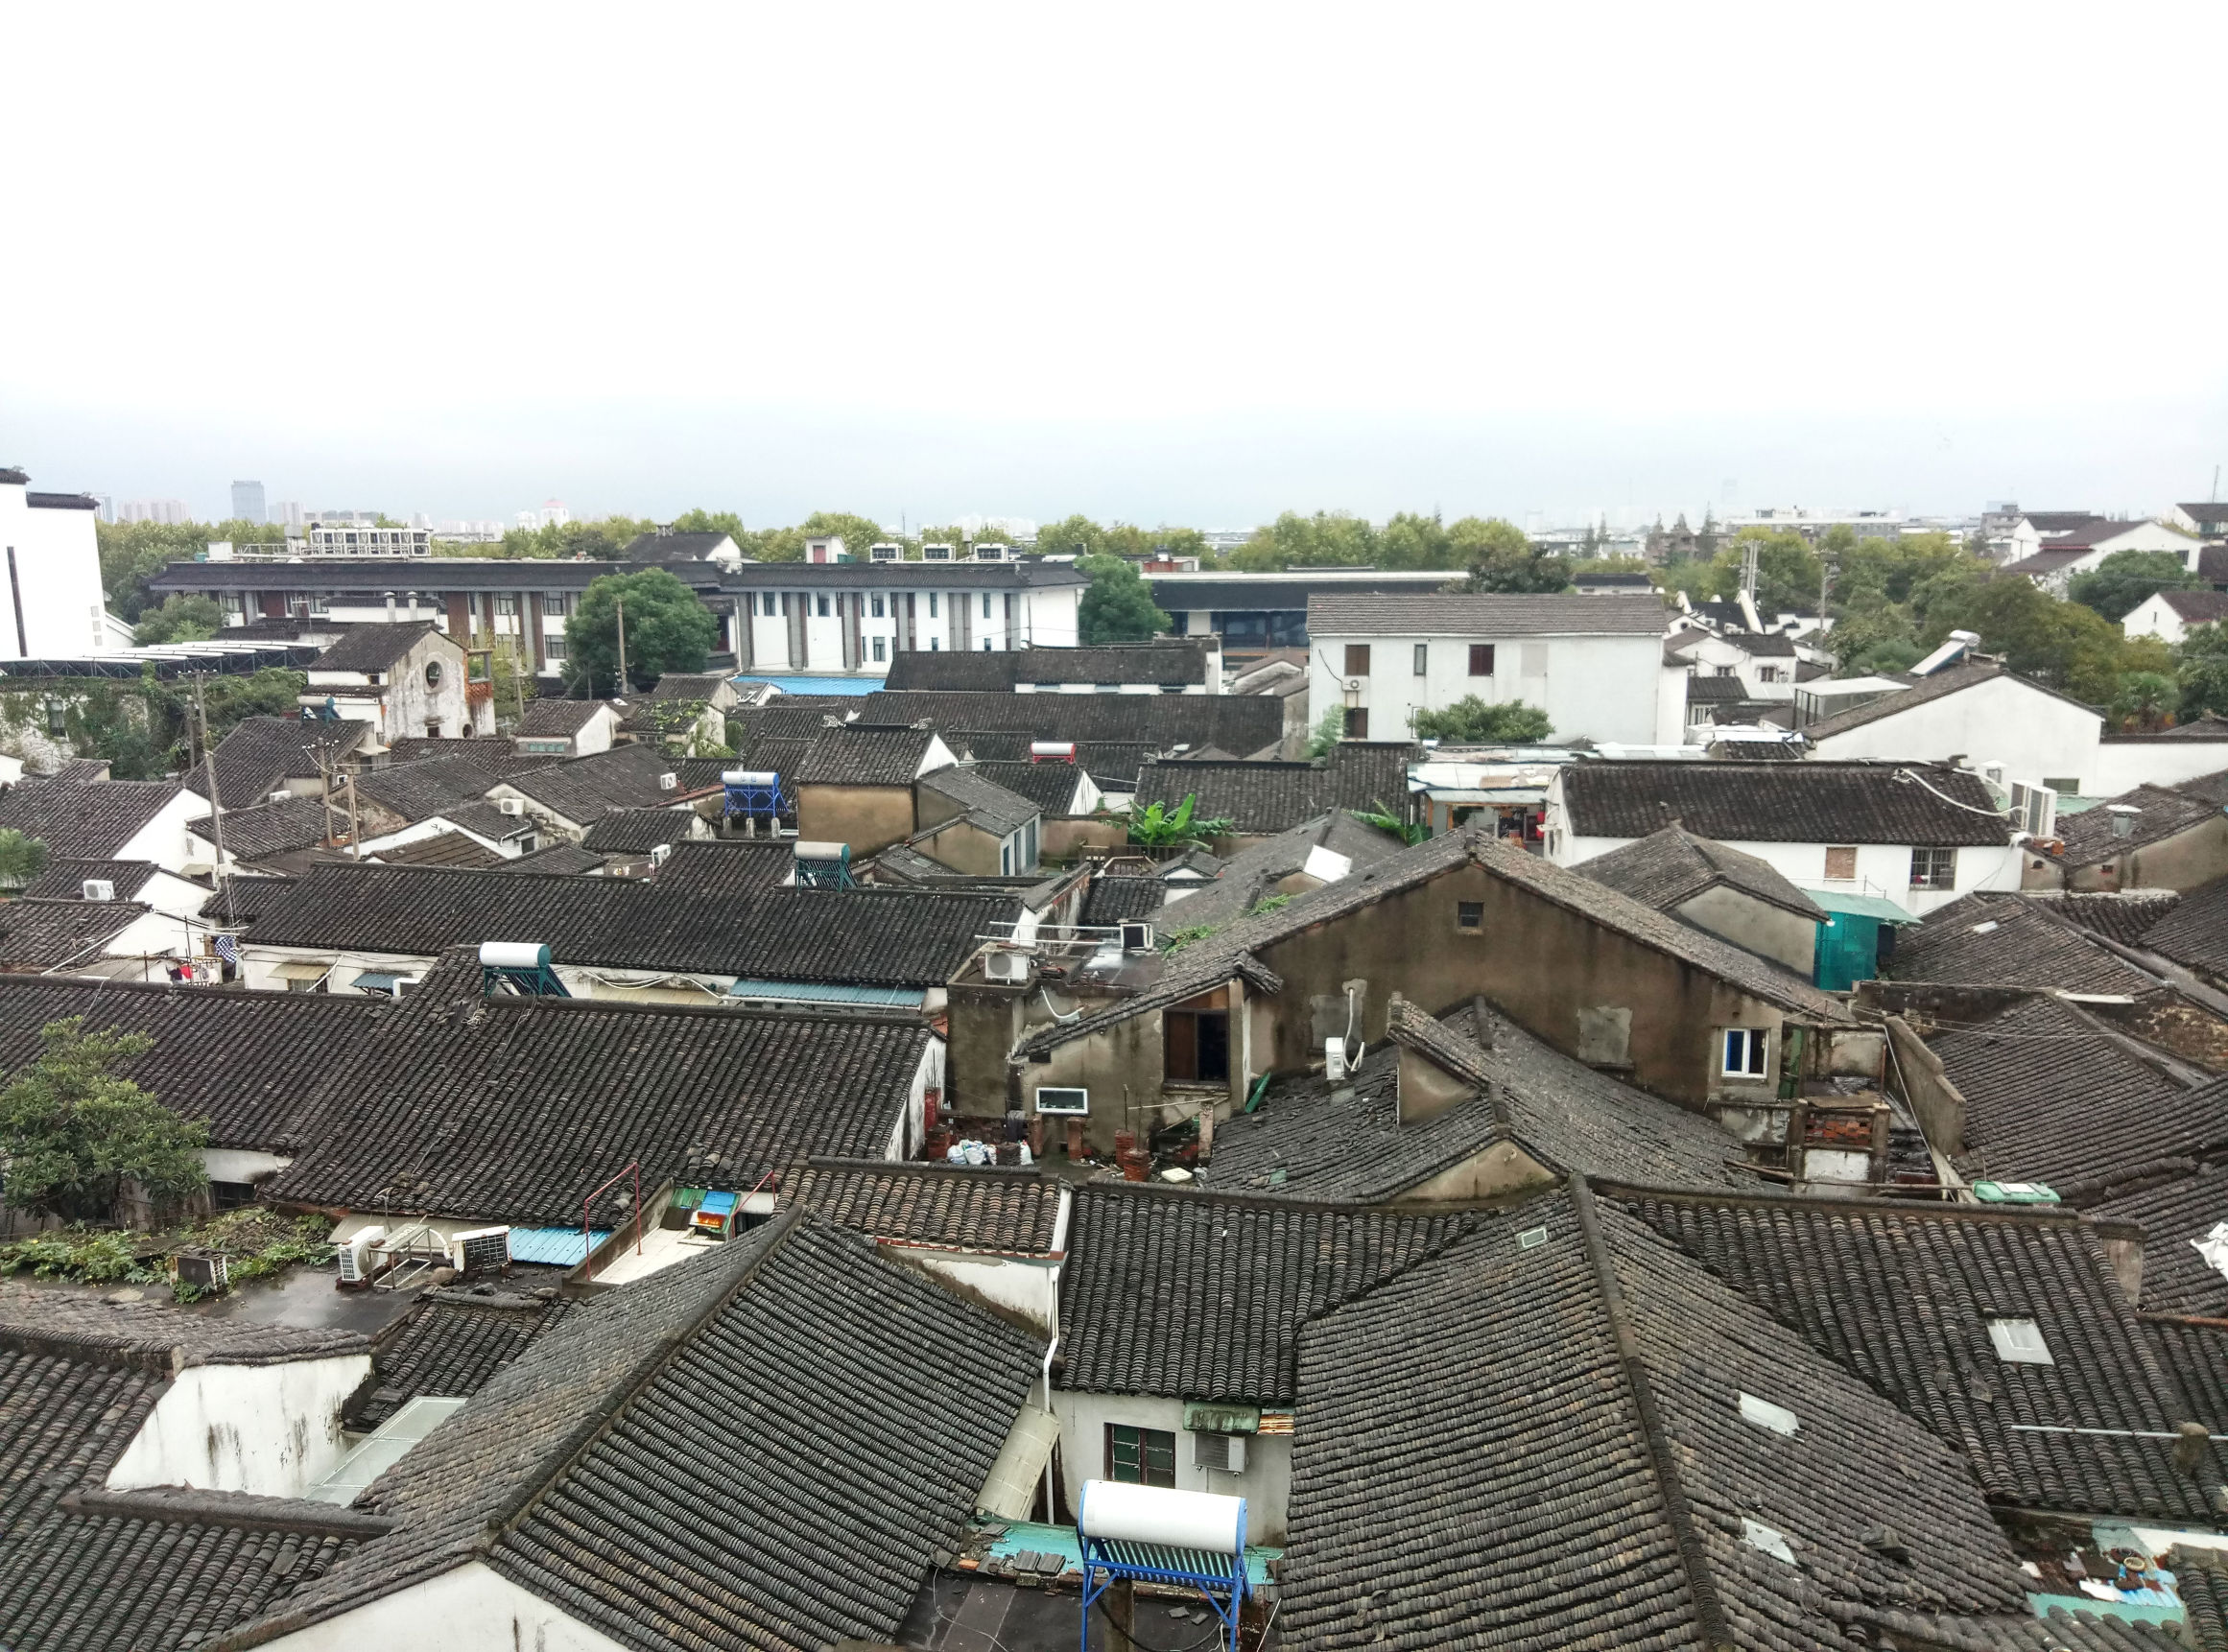 屋顶上的苏州城,它那江南水乡的味道一览无余